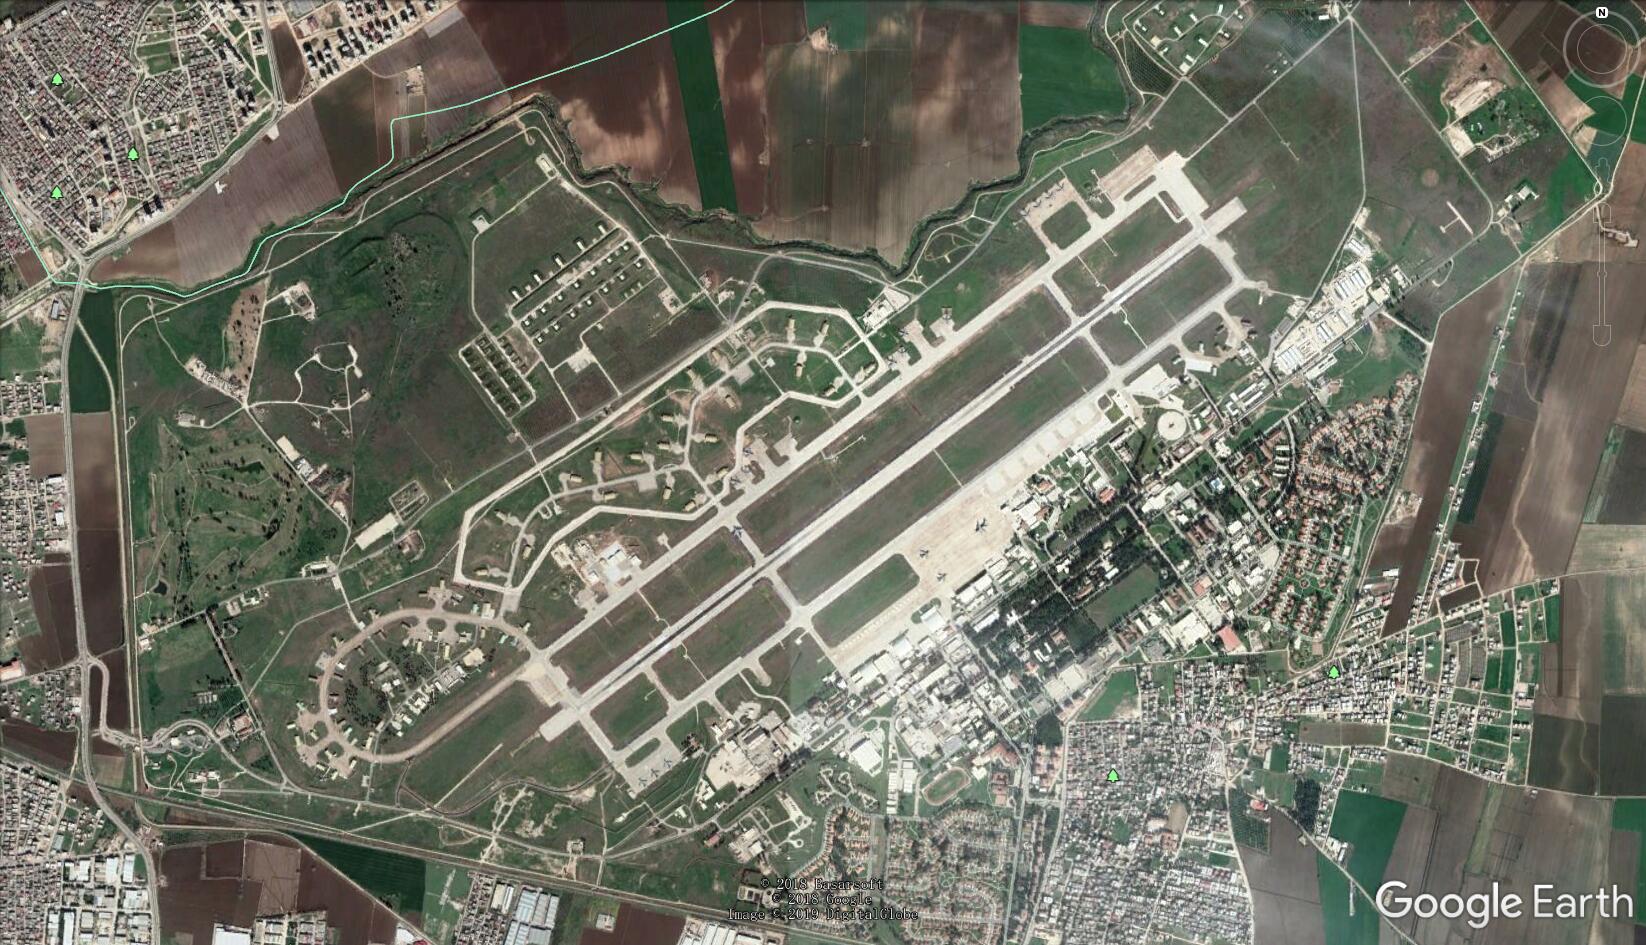 较为早期的因吉尔利克空军基地 俯视图,可见西北角明显扩建,dcs里应该